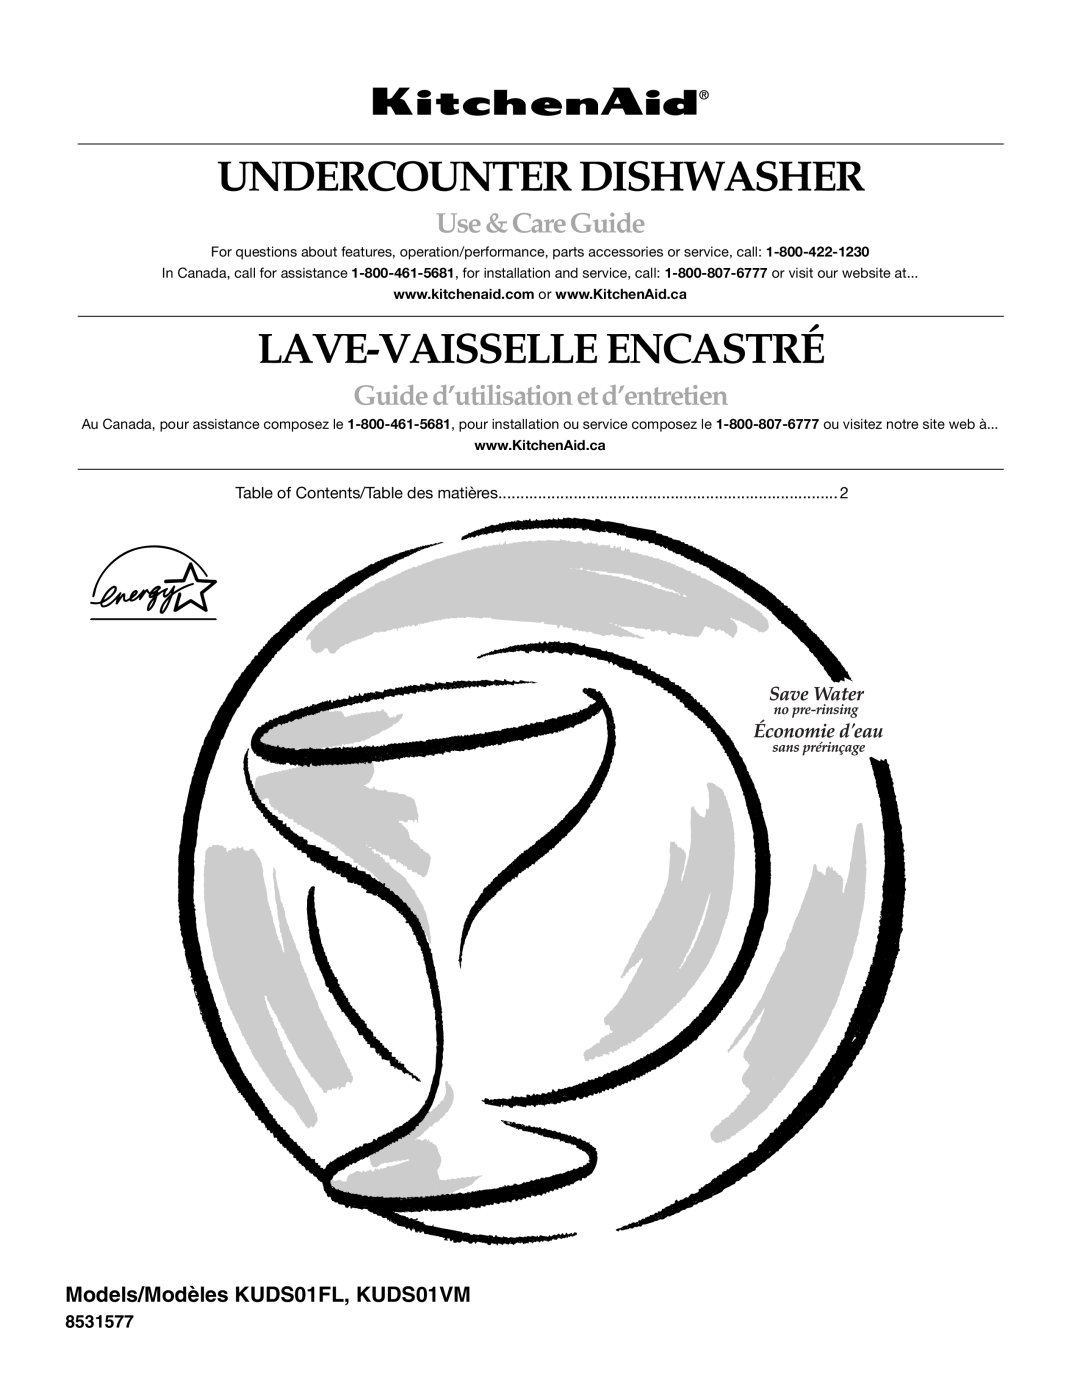 KitchenAid KUDS01VM manual Undercounter Dishwasher, Lave-Vaisselle Encastré, Use &CareGuide 